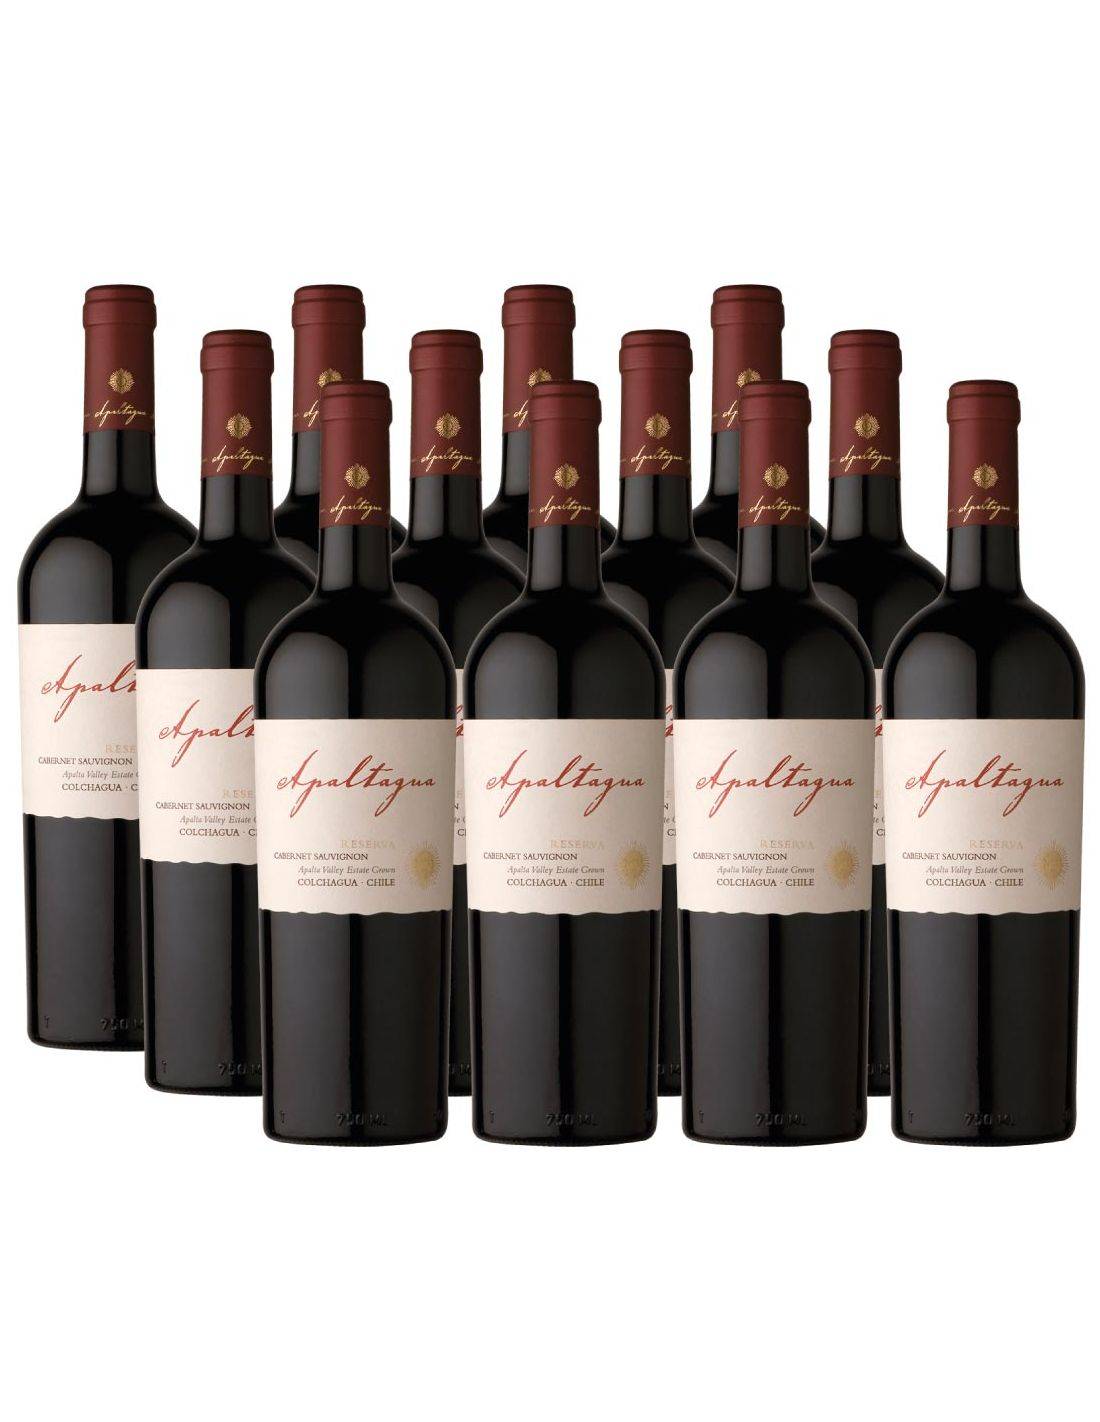 emocionante deficiencia monstruo 12 vinos Cabernet Sauvignon Reserva Viña Apaltagua al Mejor Precio